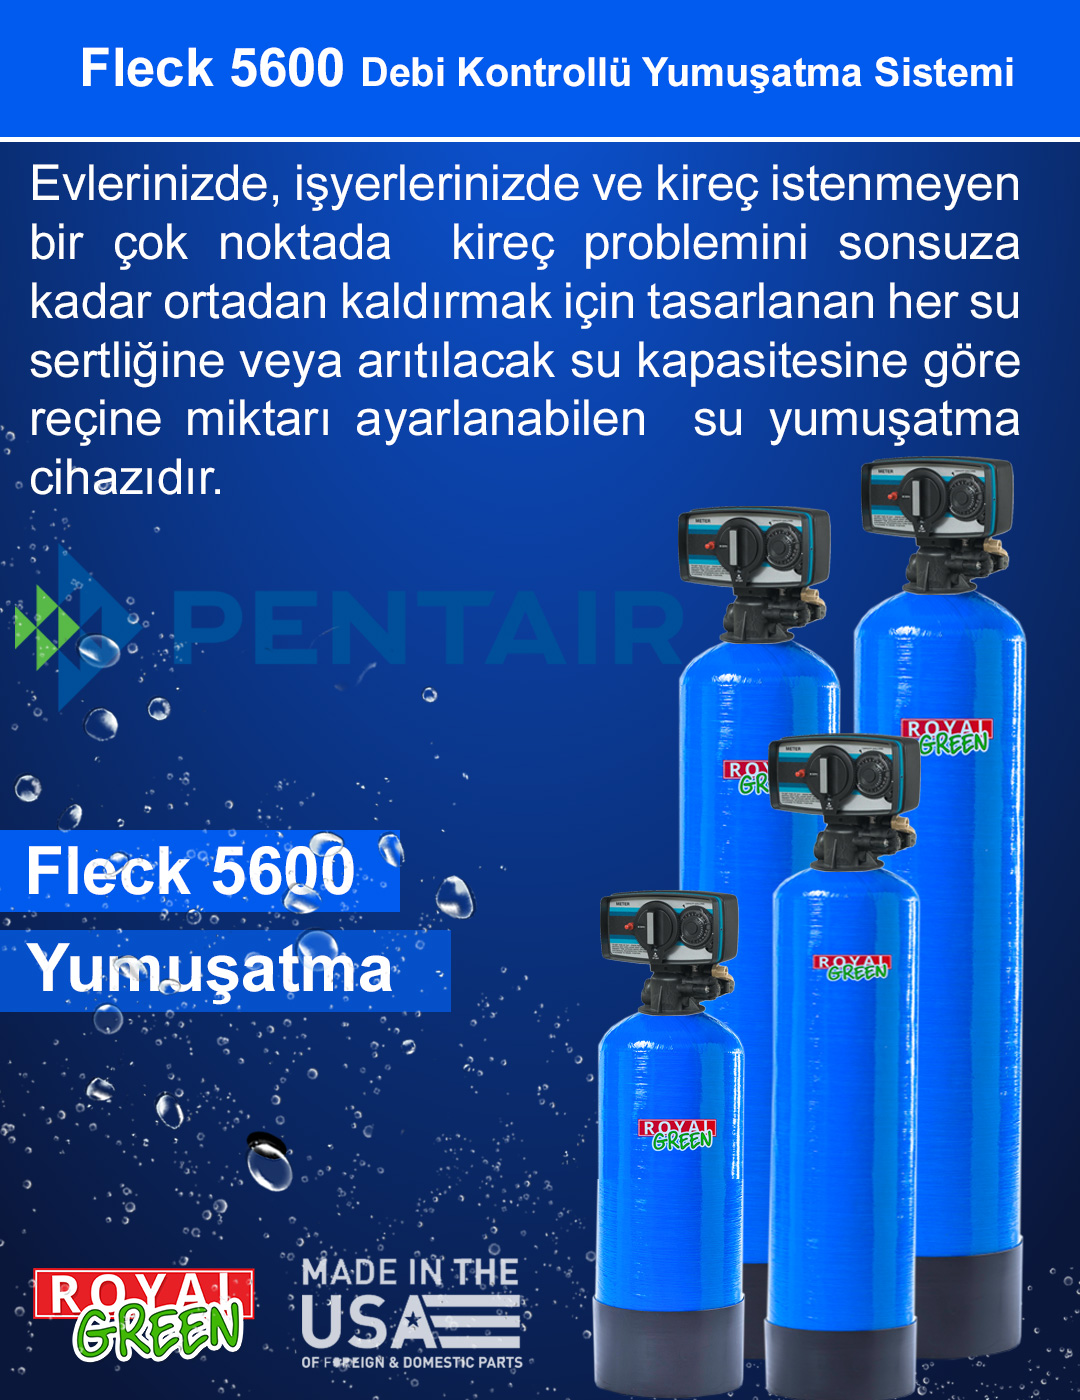 Fleck 5600 Debi Kontrollu Yumusatma Sistemi banner